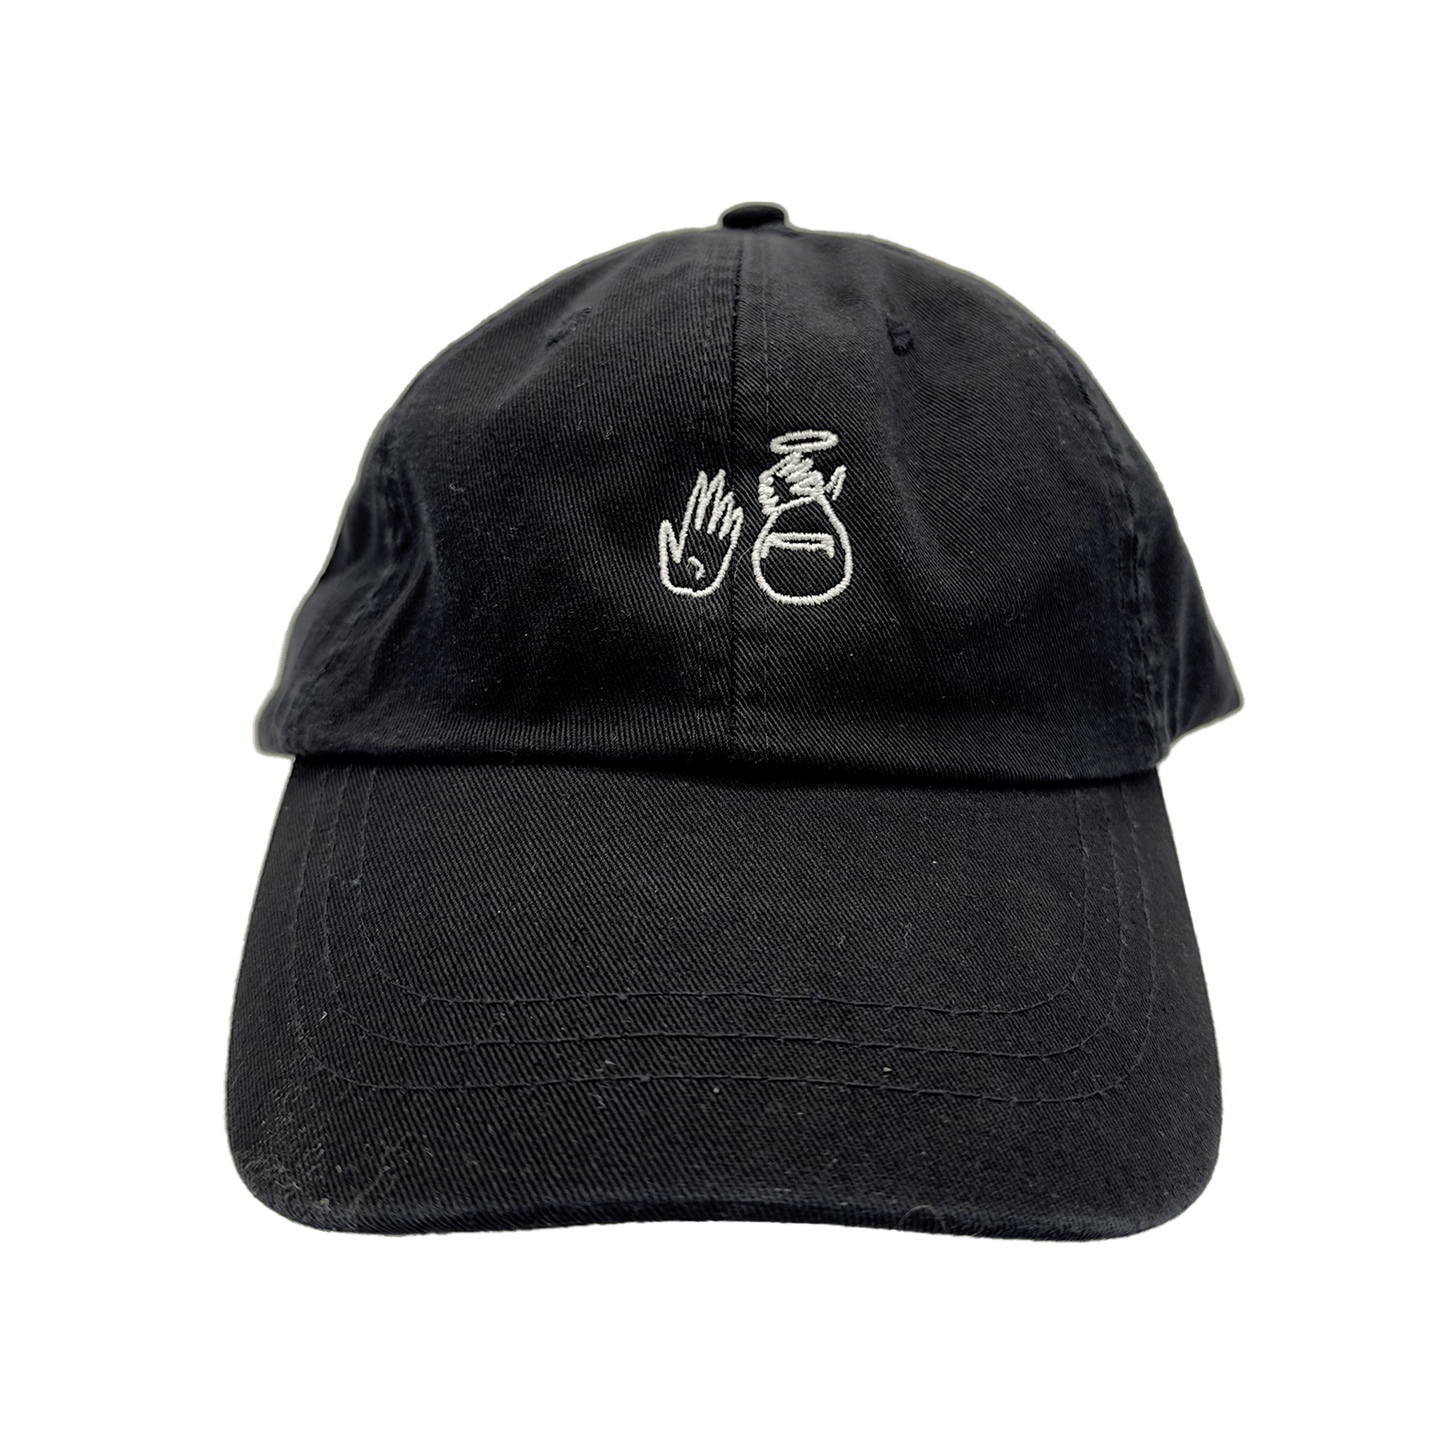 Retro Black Dad Hat